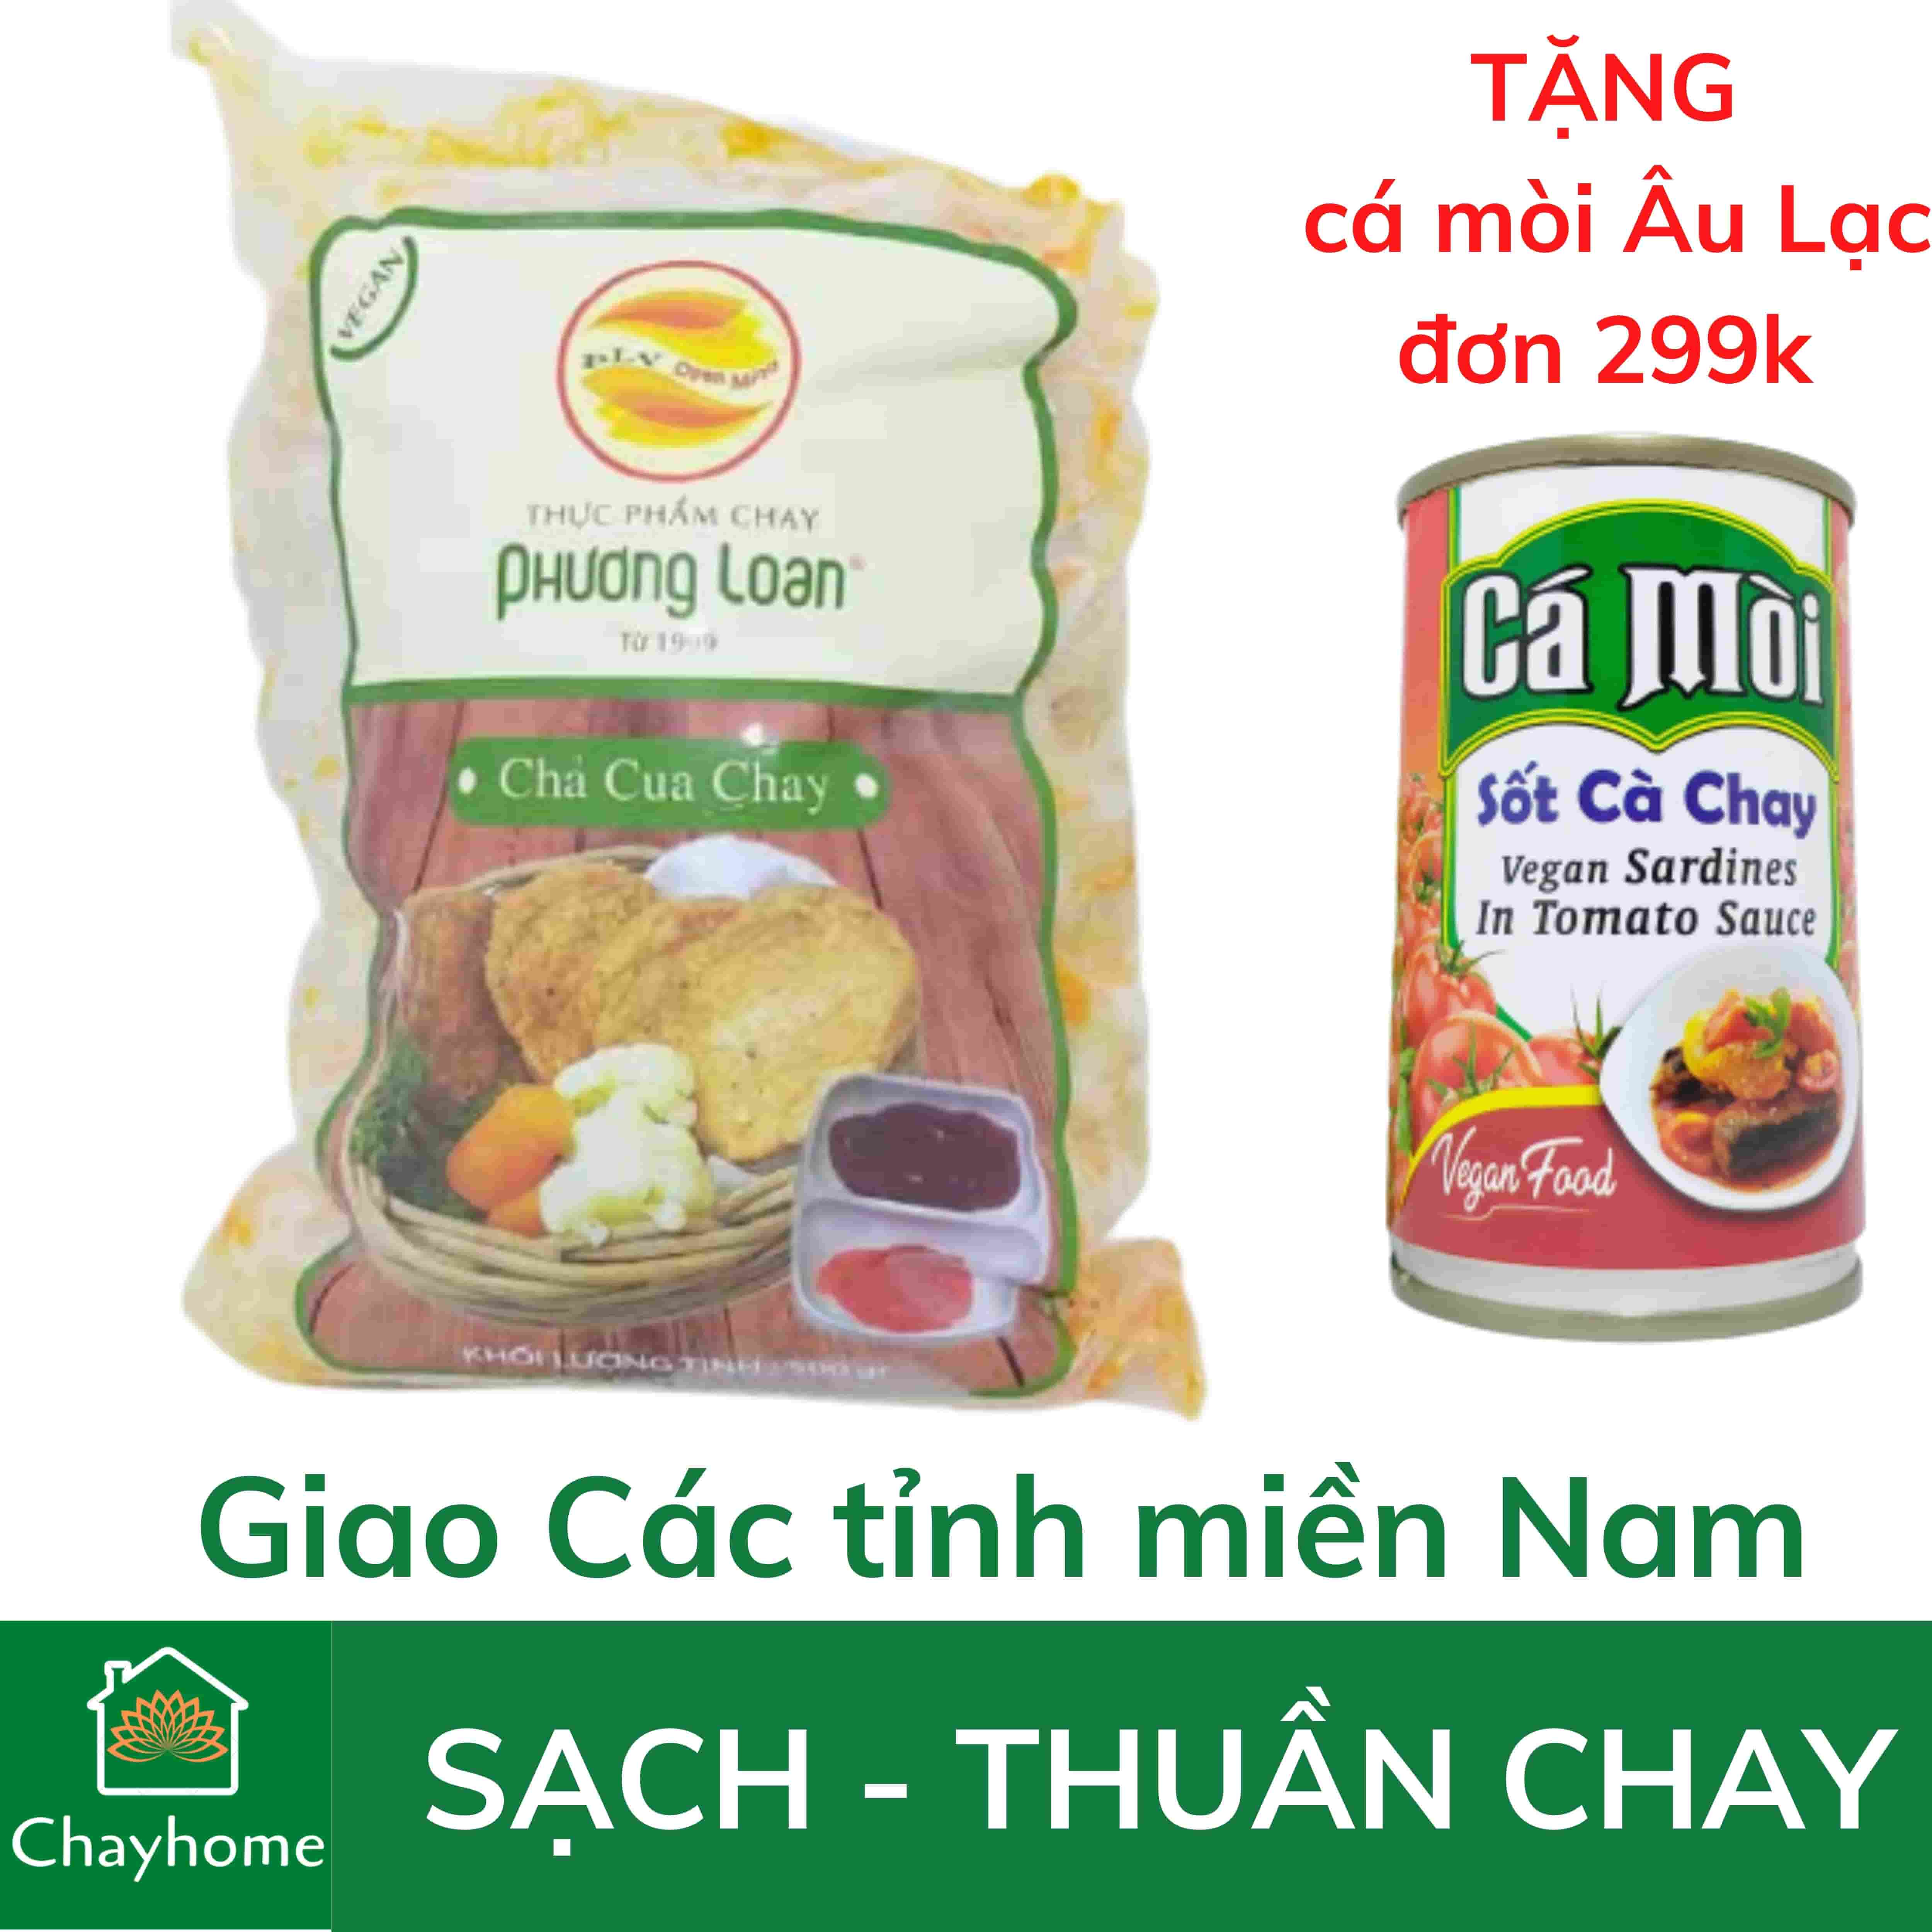 500g Chả cua chay Phương Loan - Thơm ngon thuần chay - Chayhome